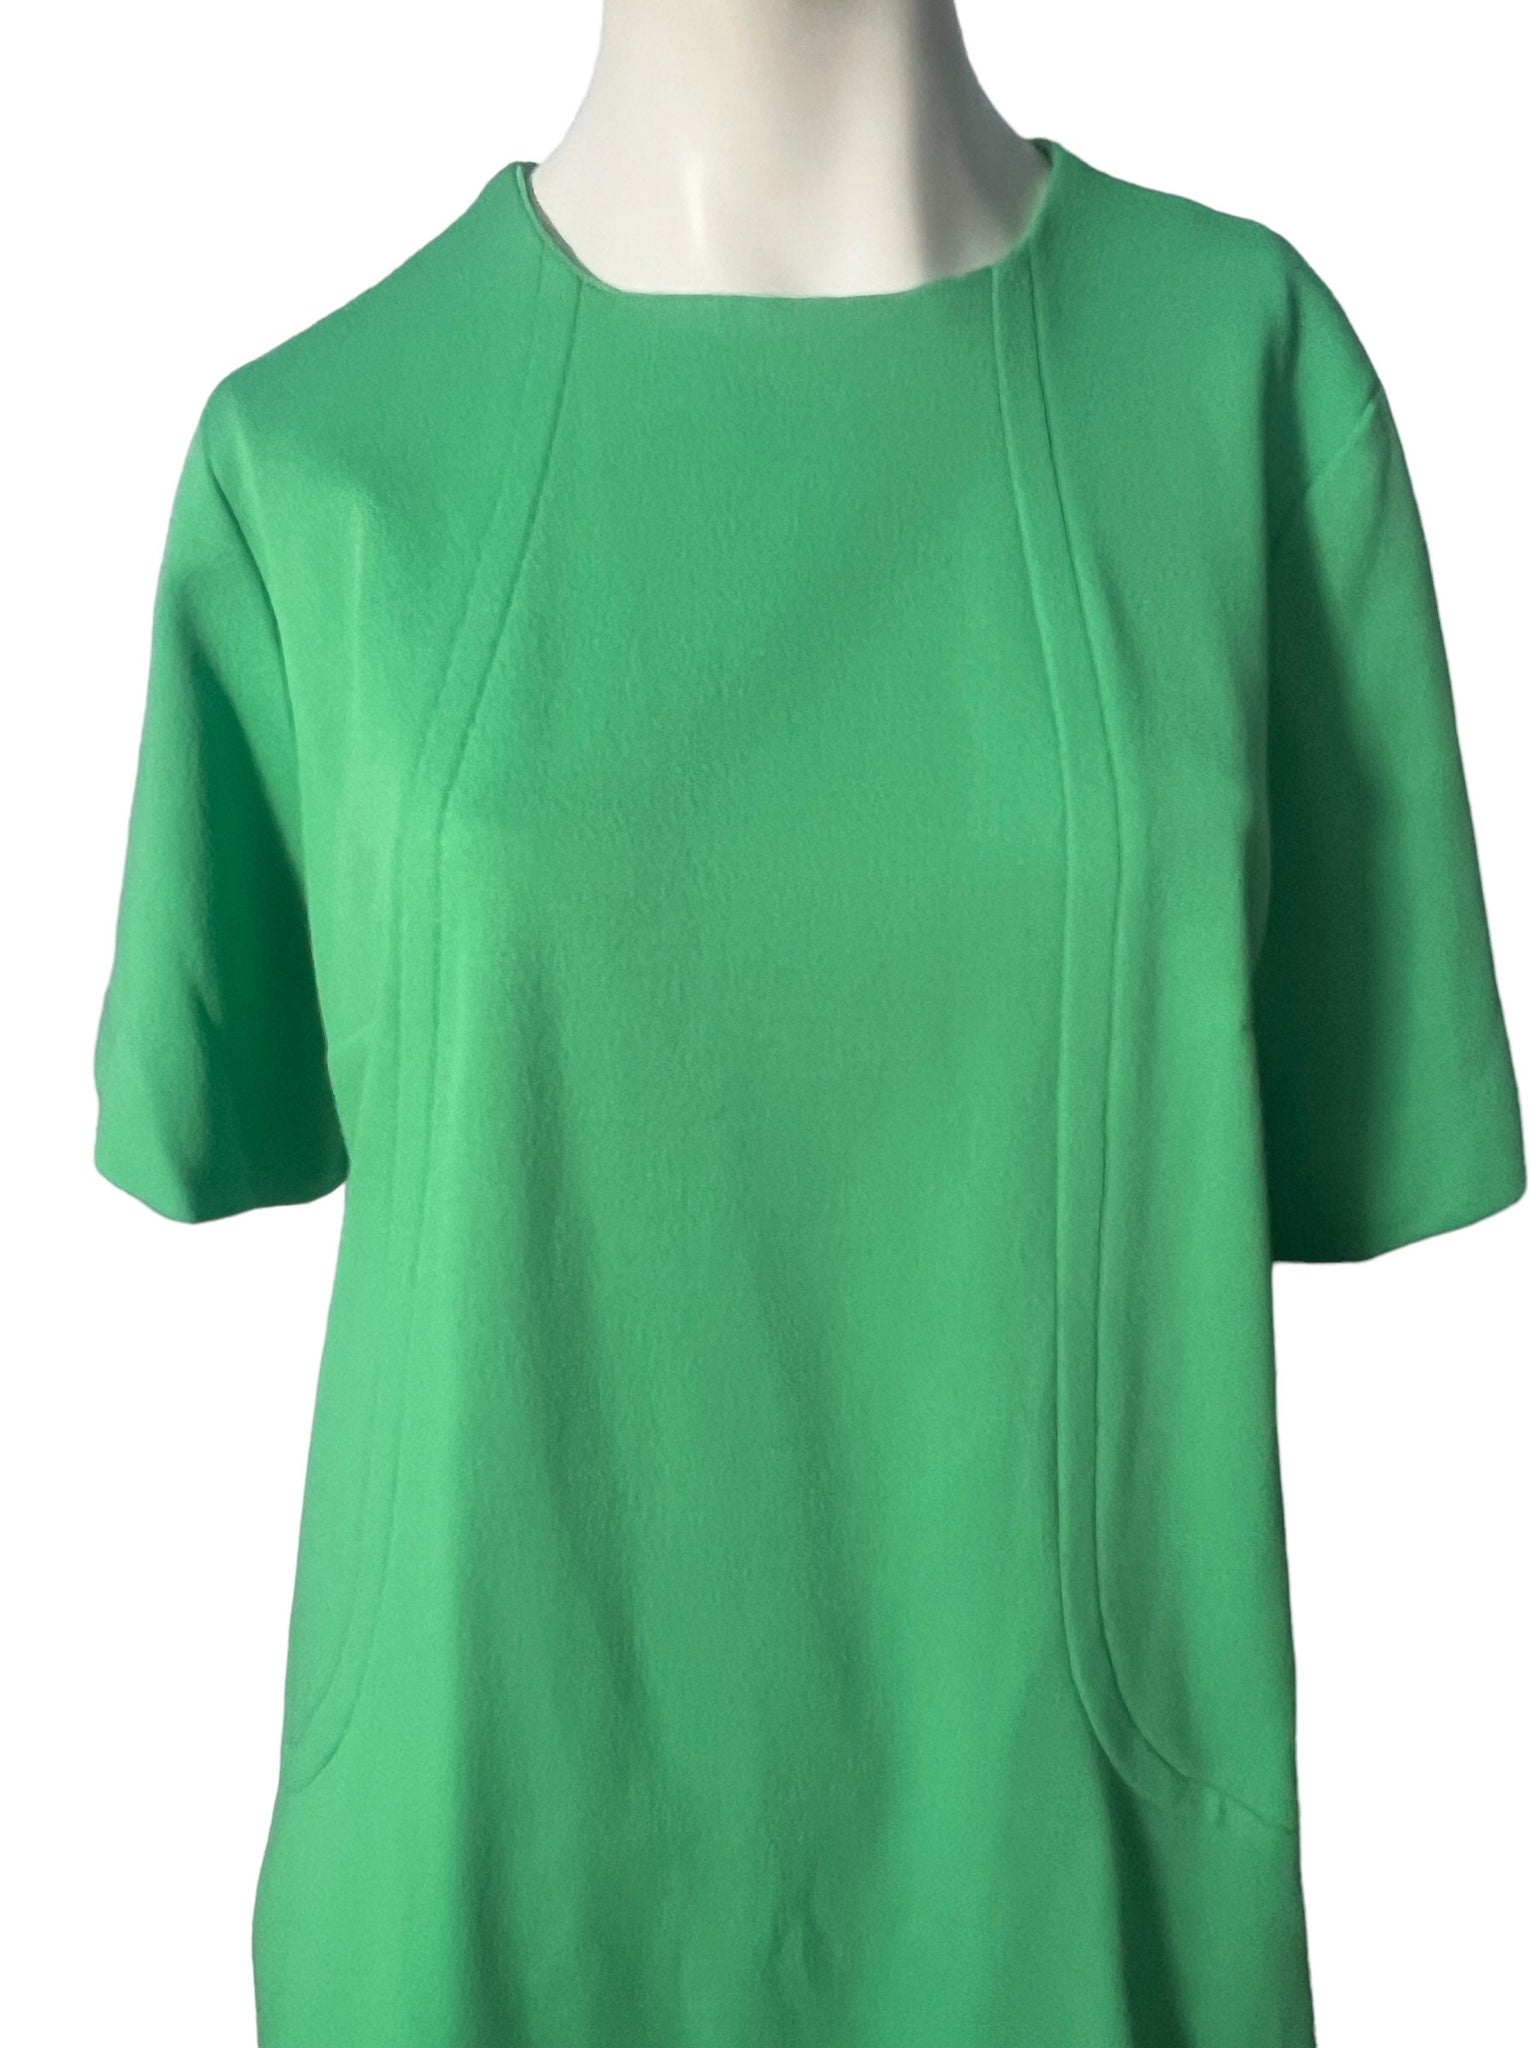 Vintage 70's green dress XL XXL Five Fashion